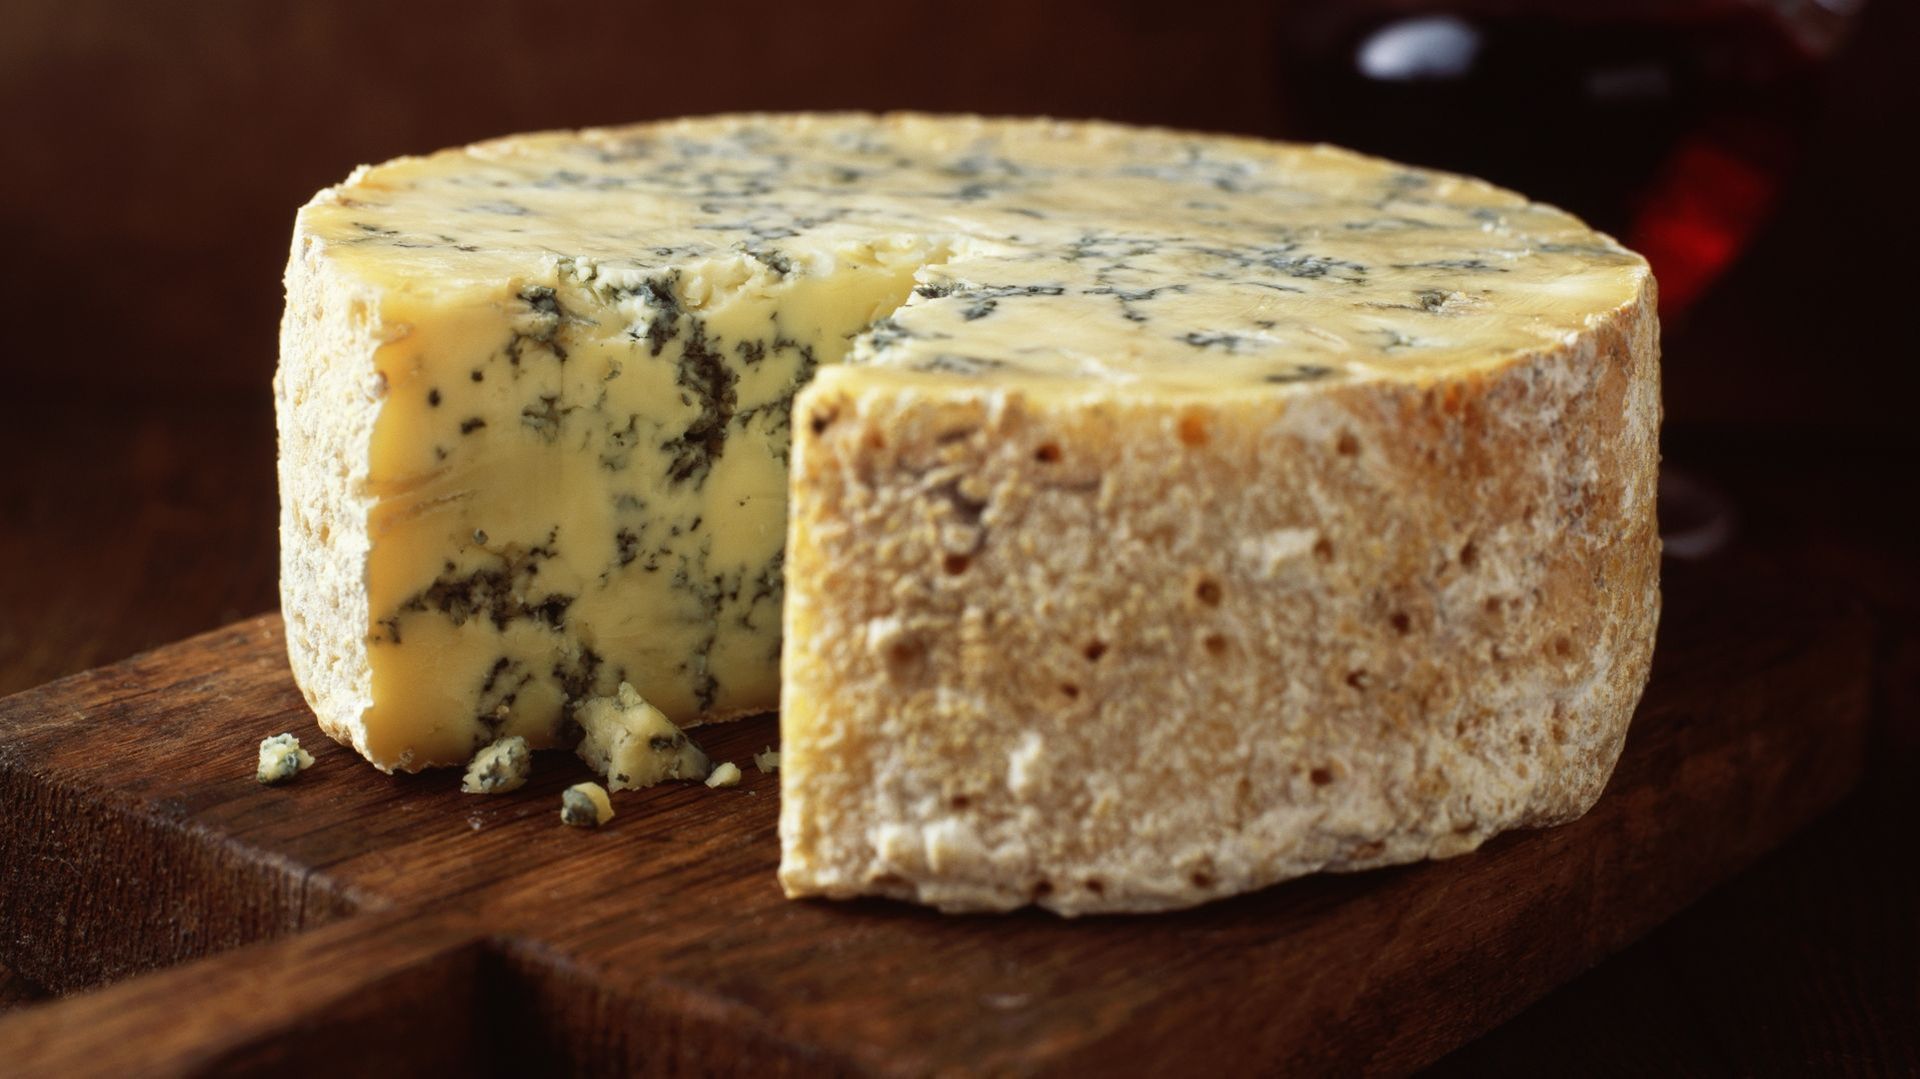 des-cacas-de-2700-ans-revelent-que-les-mineurs-de-lage-du-fer-mangeaient-du-fromage-bleu-et-buvaient-de-la-biere